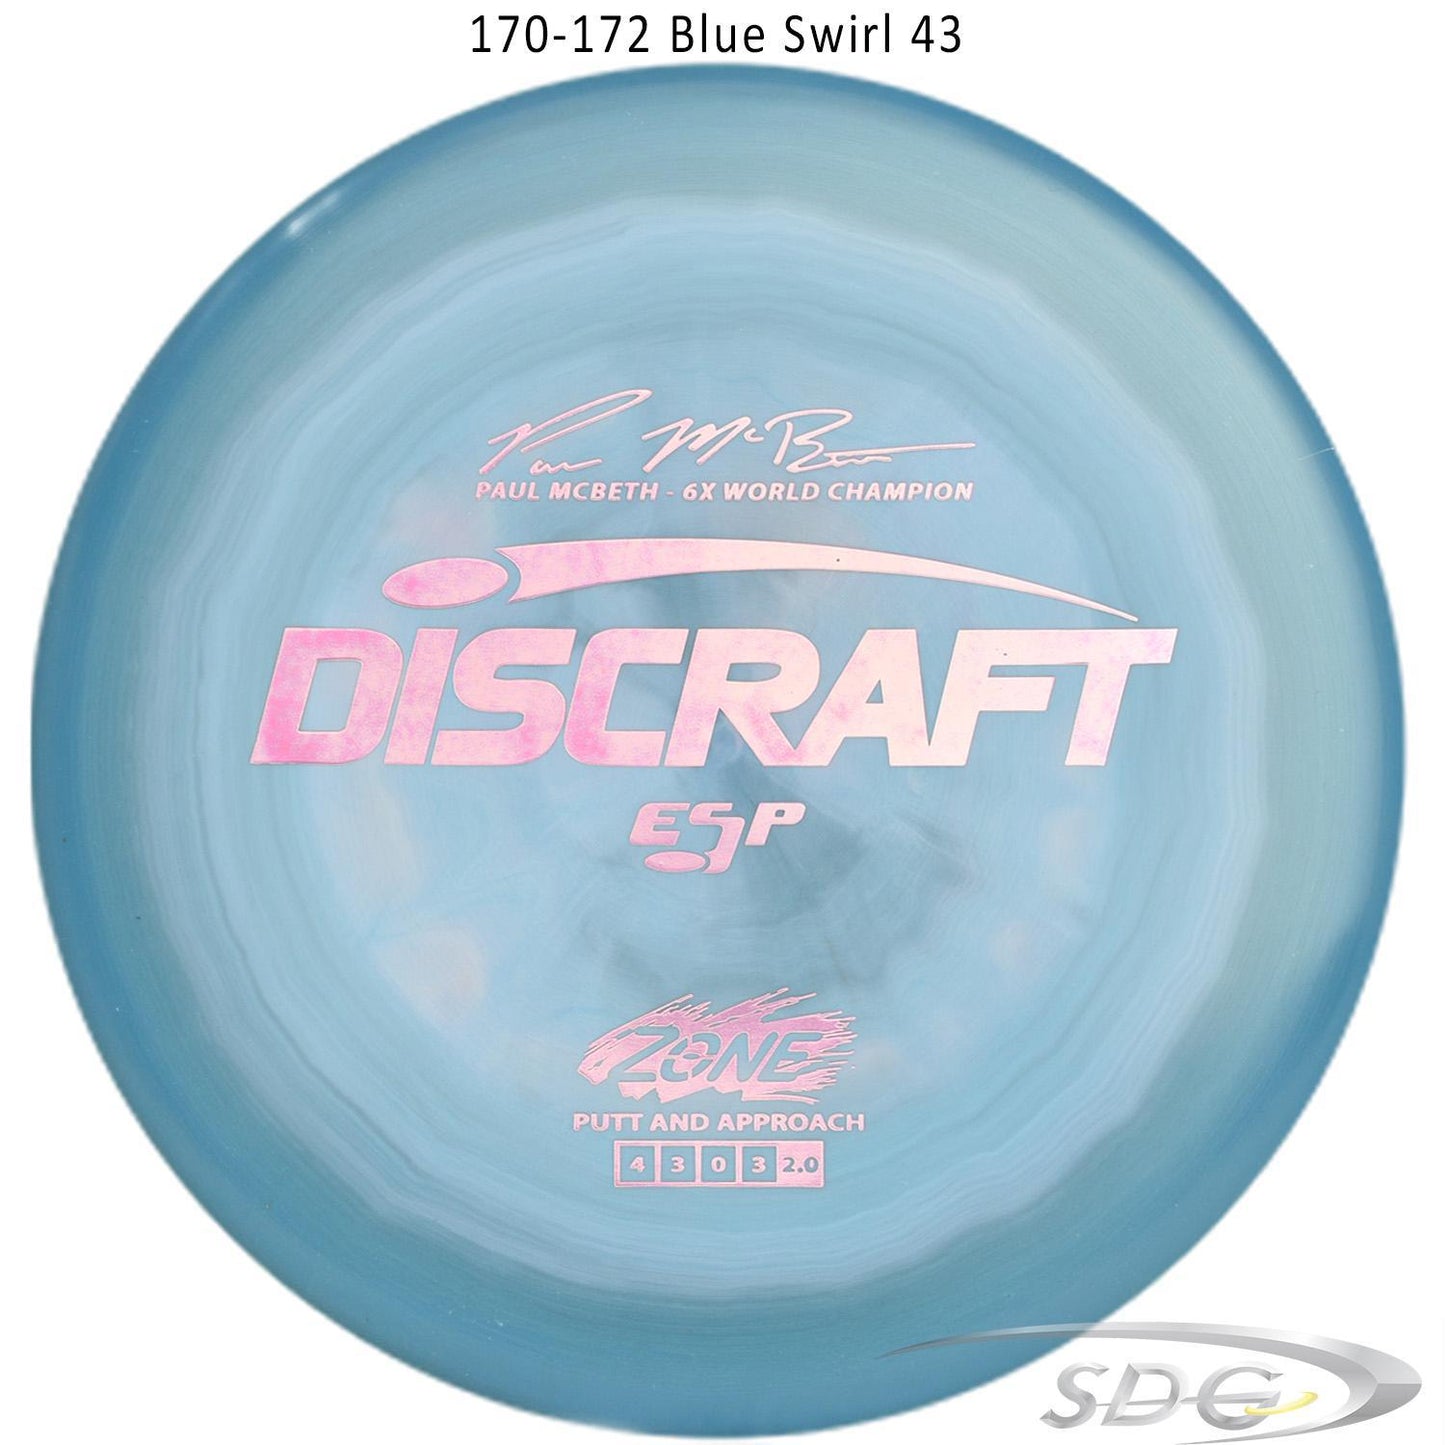 discraft-esp-zone-6x-paul-mcbeth-signature-series-disc-golf-putter 170-172 Blue Swirl 43